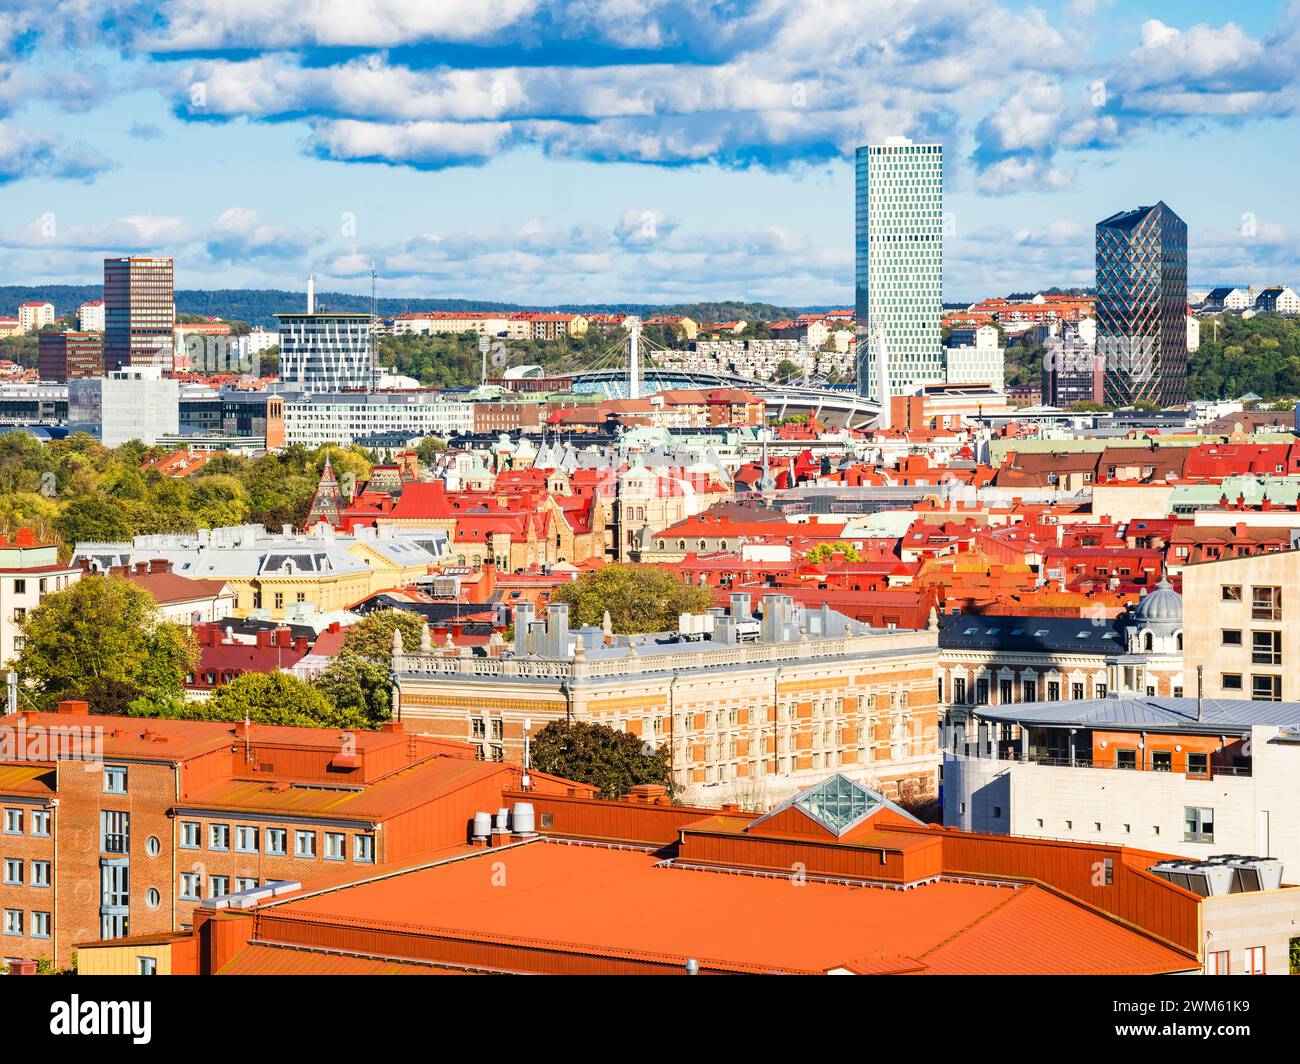 La ville de Gothenburg en Suède est mise en valeur dans cette vue, dominée par un groupe de grands bâtiments qui forment l'horizon de la ville. Le paysage urbain Banque D'Images